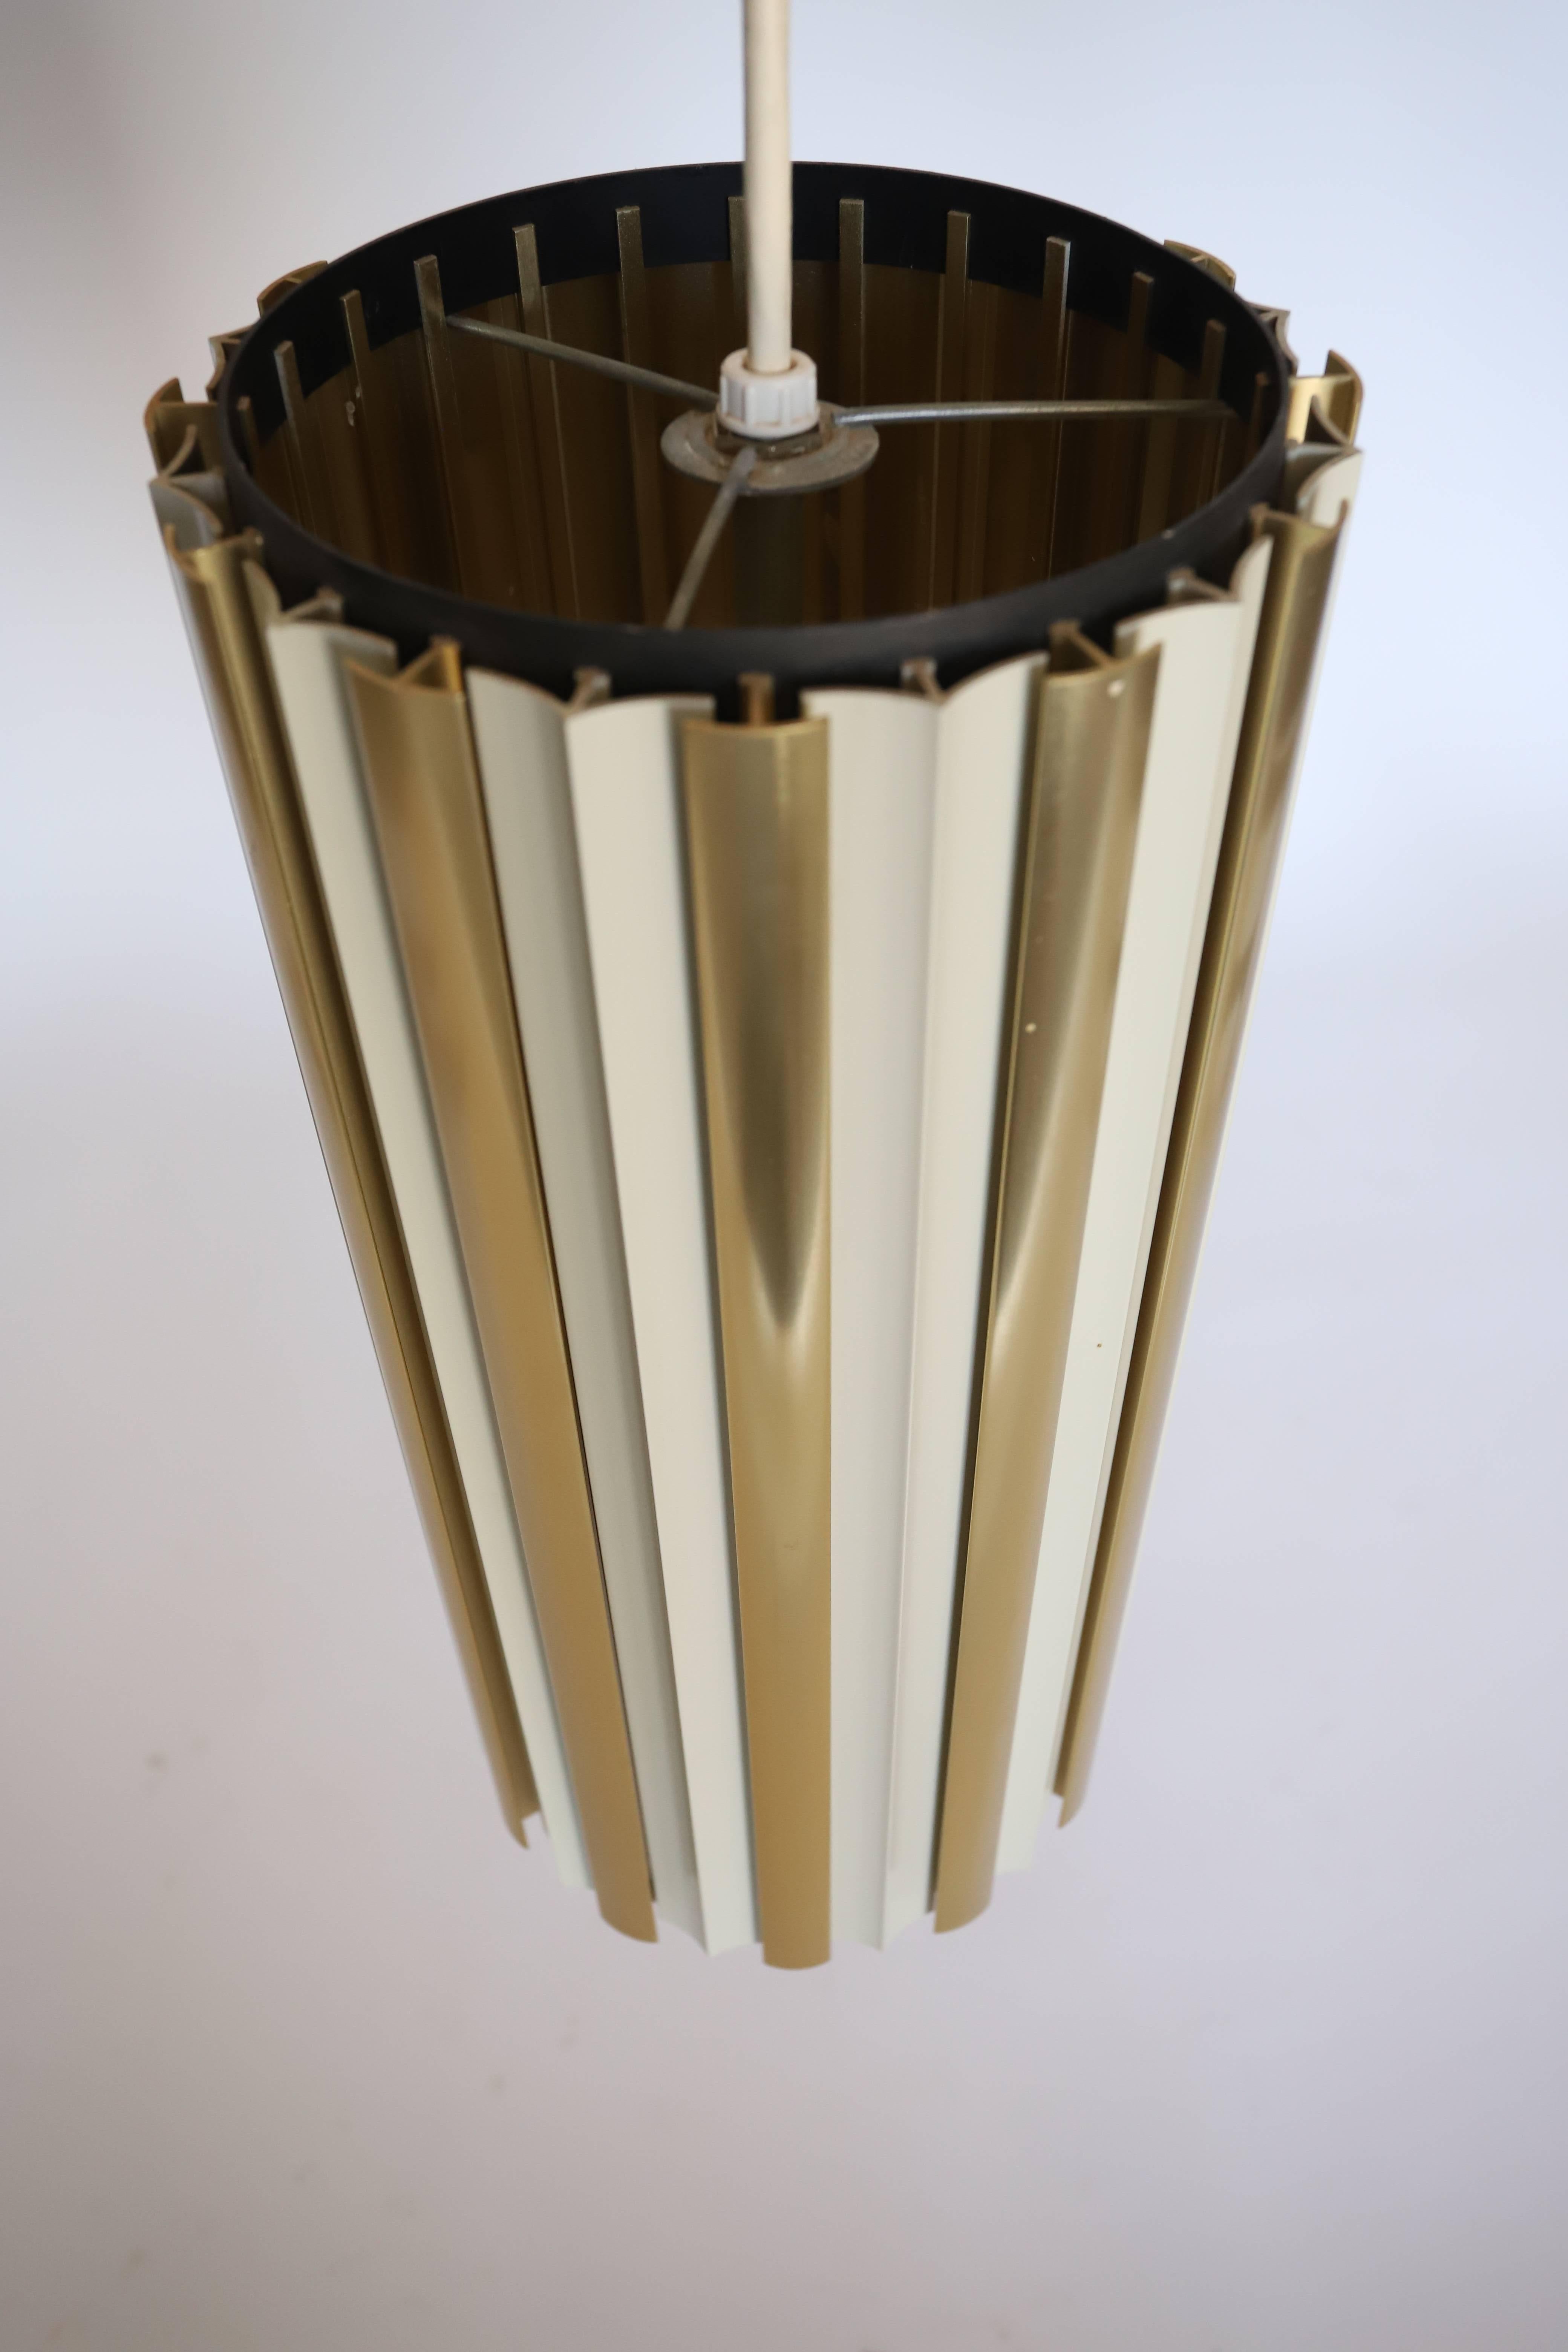 Die röhrenförmige Lightolier Pendelleuchte mit Raster ist eine moderne und vielseitige Leuchte, die schlankes Design mit effektiver Beleuchtung kombiniert. Die röhrenförmige Form und der Schirm mit Lamellen machen sie zu einer stilvollen Ergänzung